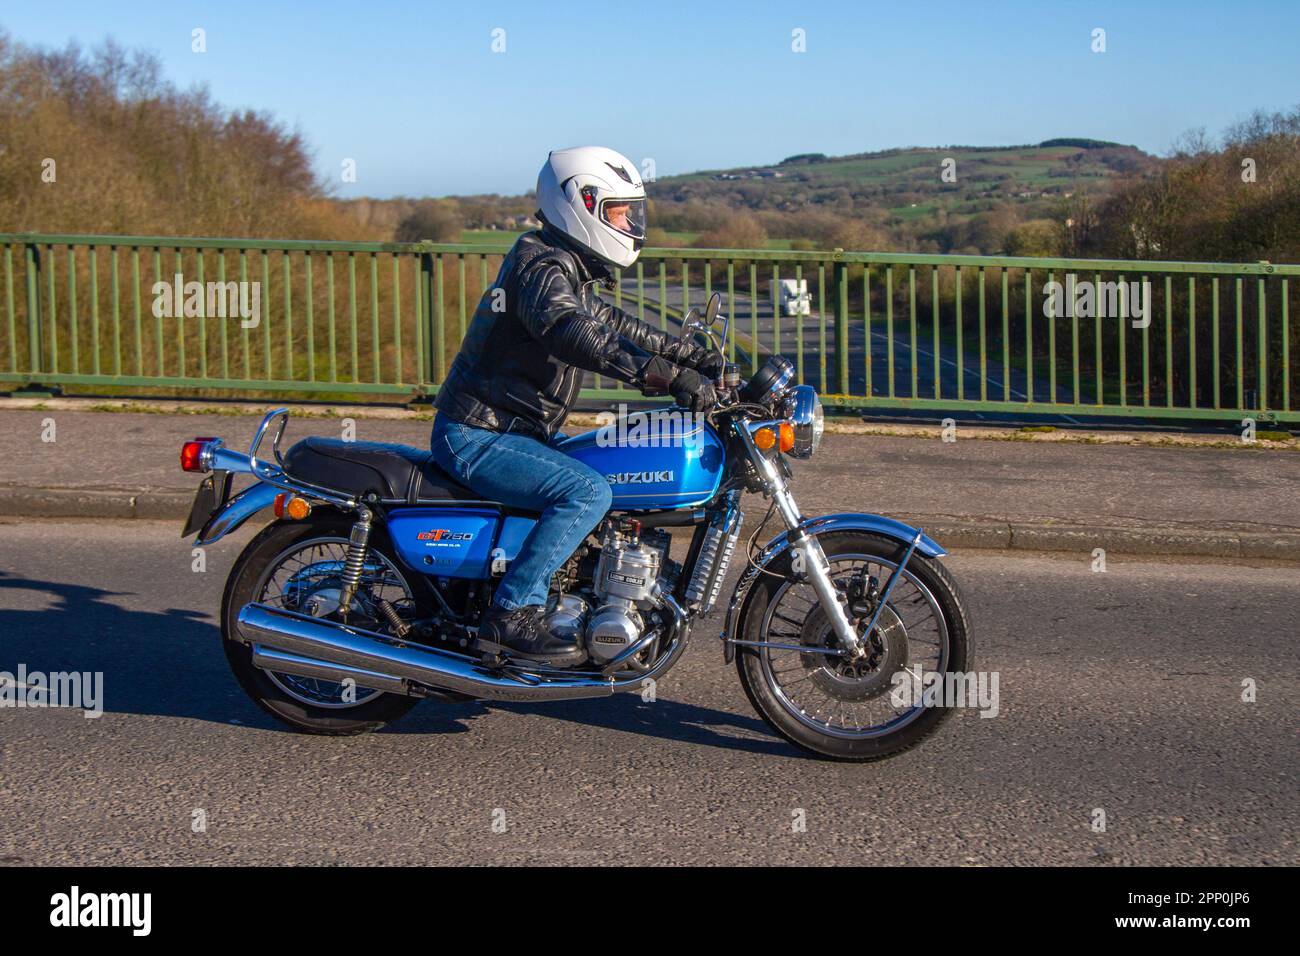 1975 70s Siebzigerjahre Suzuki GT750 Blue Motorcycle Petrol 739 cm3, bekannt als Wasserbüffel oder Kettle; Überquerung der Autobahnbrücke im Großraum Manchester, Großbritannien Stockfoto